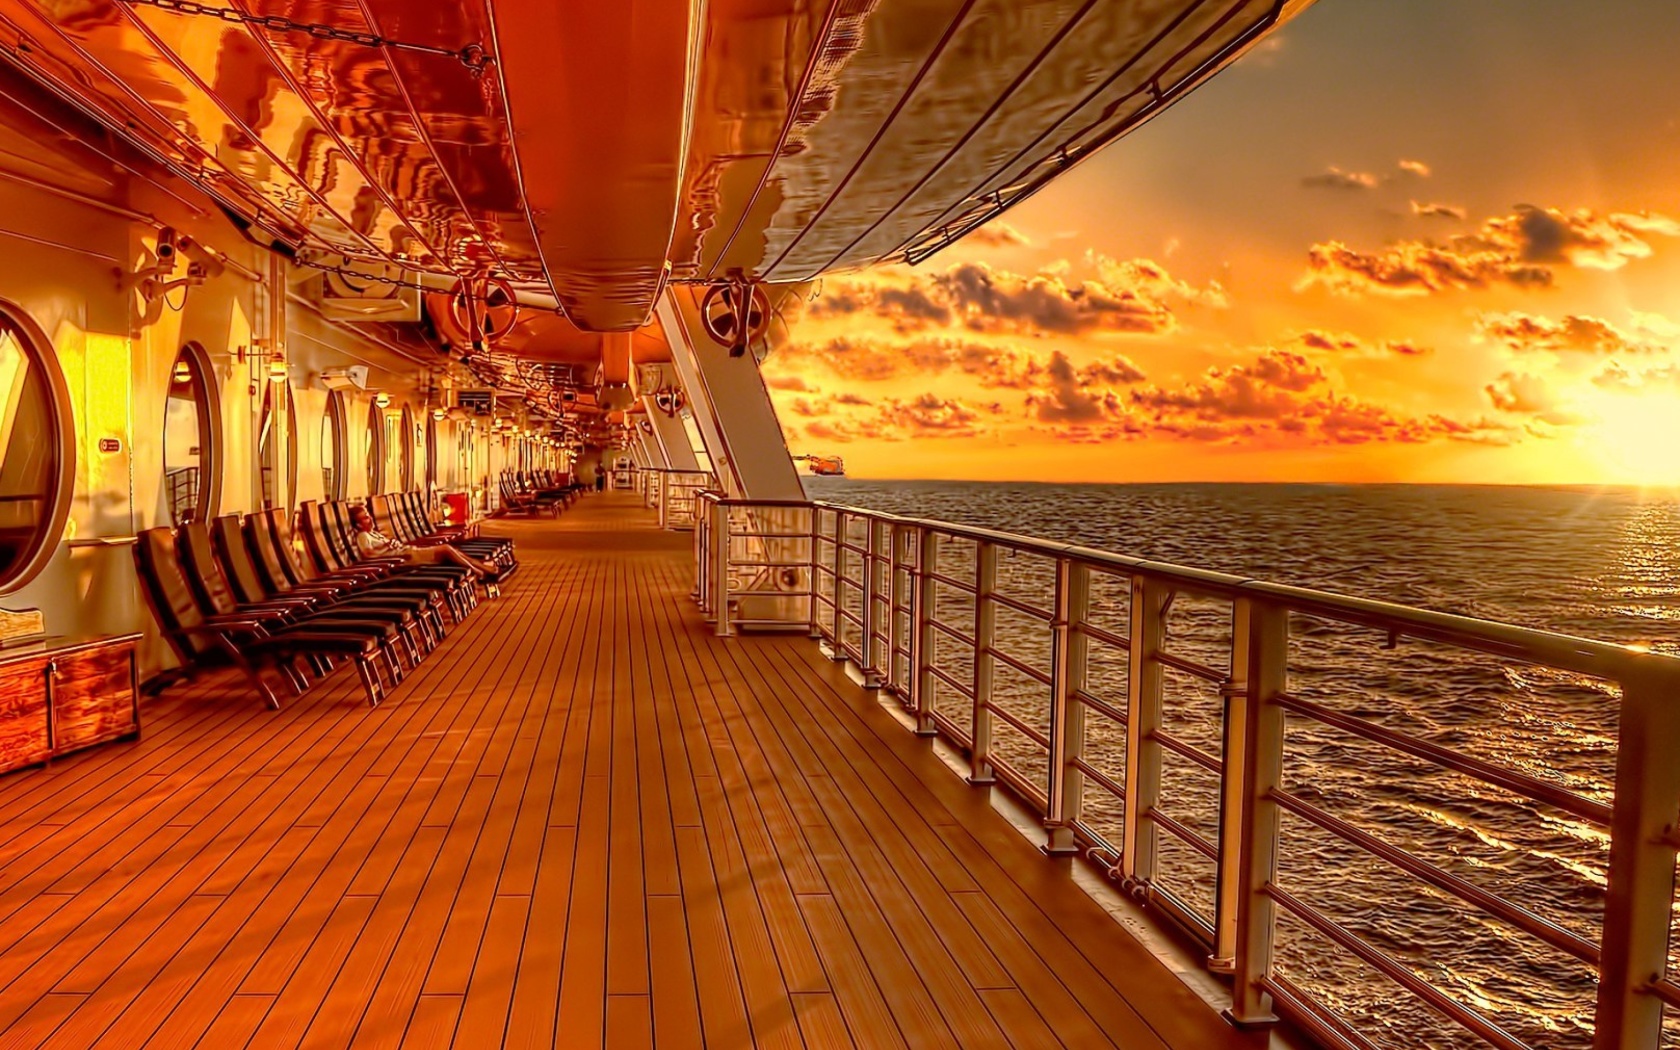 Обои Sunset on posh cruise ship 1680x1050